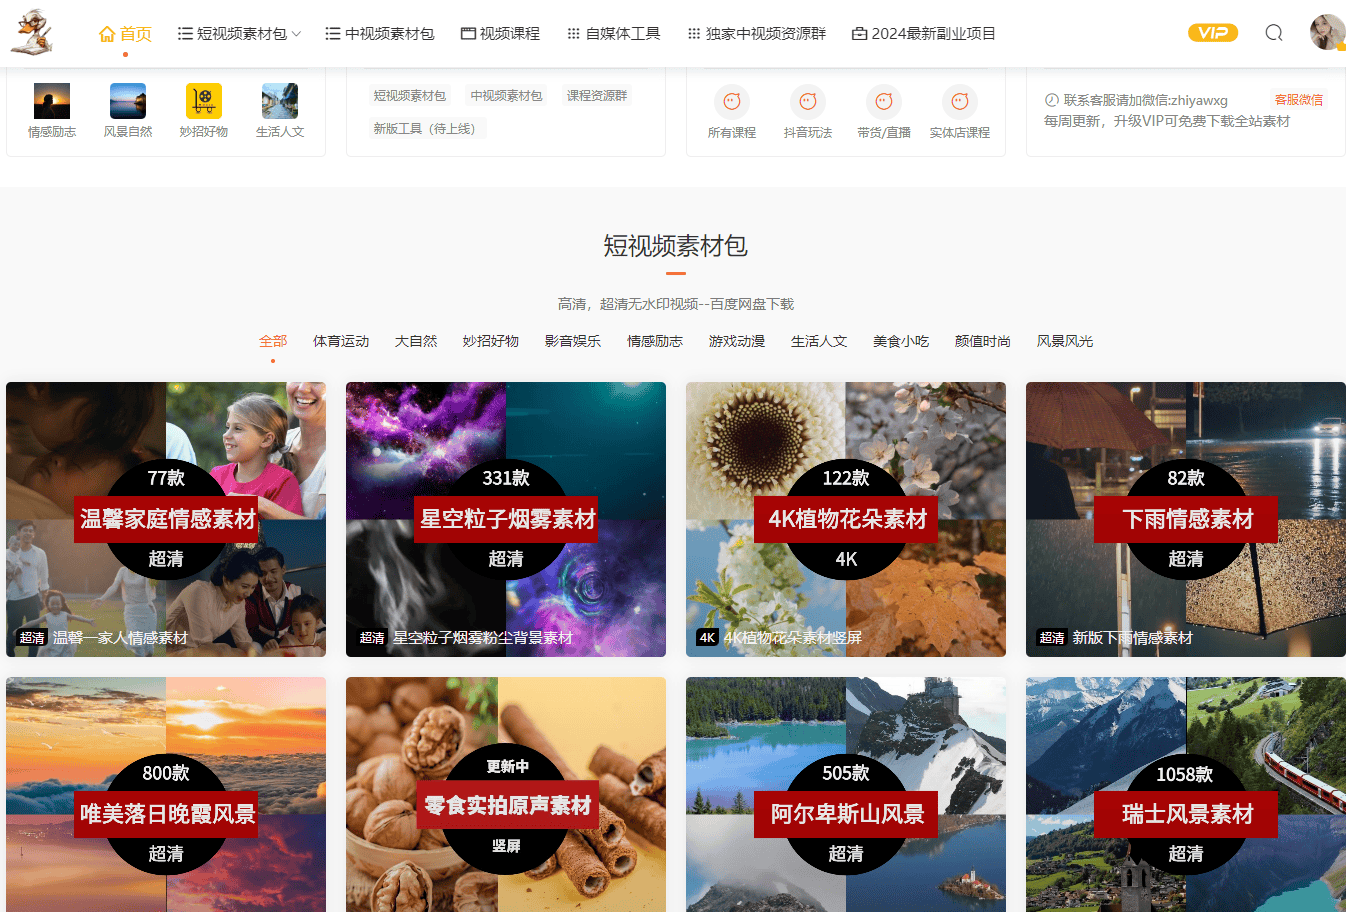 pixabay官网中文图片